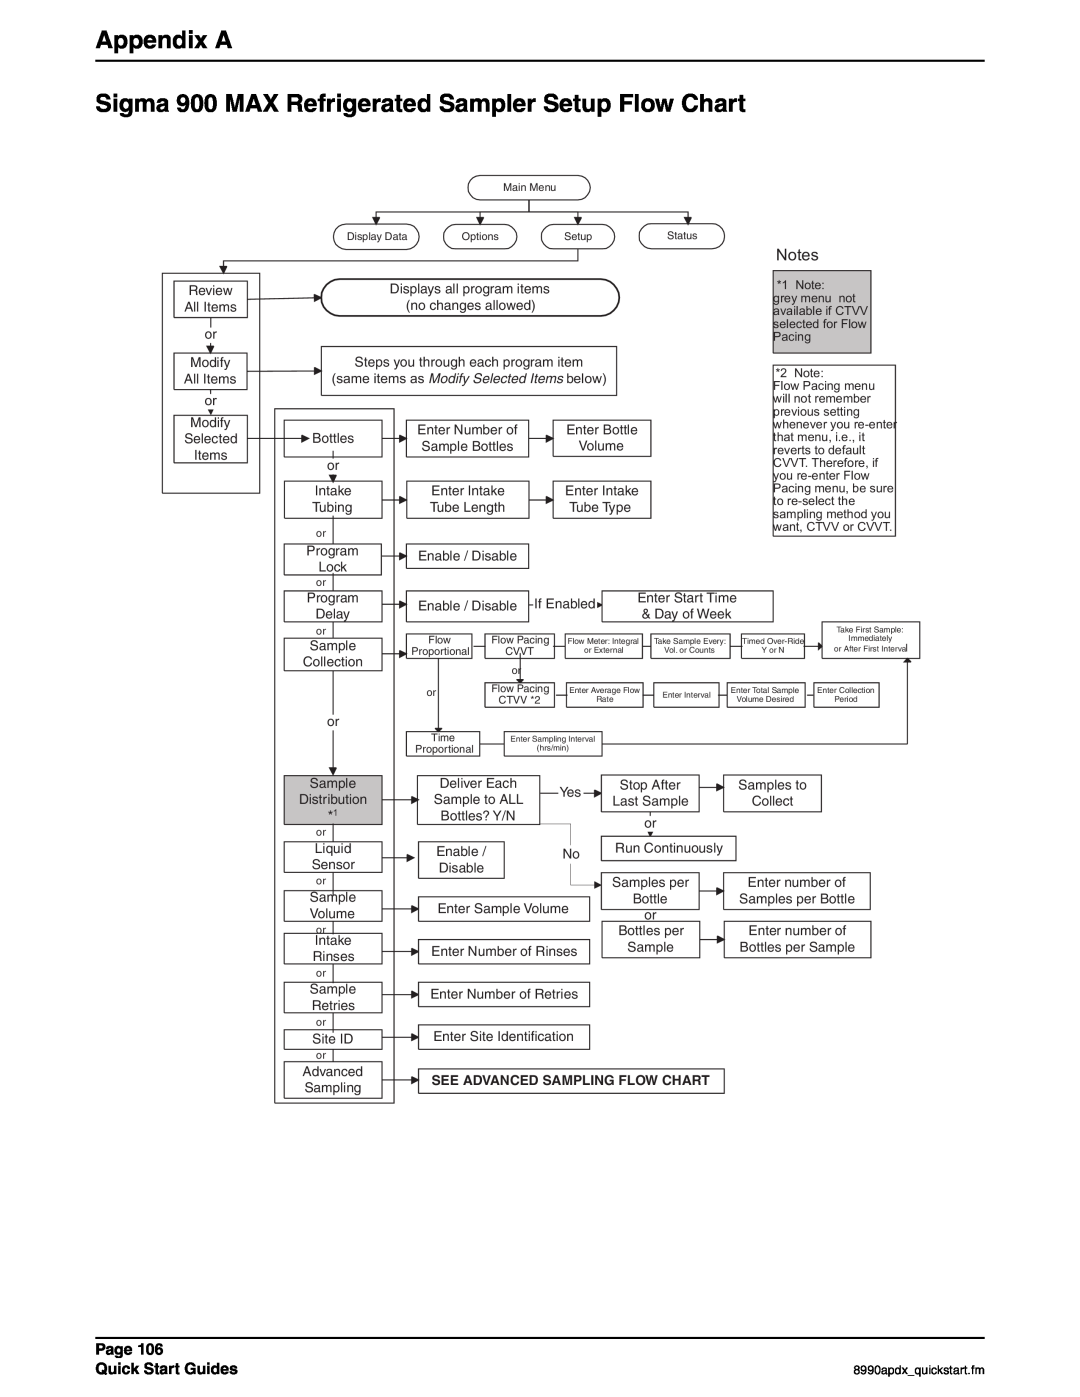 Hach 900 MAX manual Appendix A, See Advanced Sampling Flow Chart 